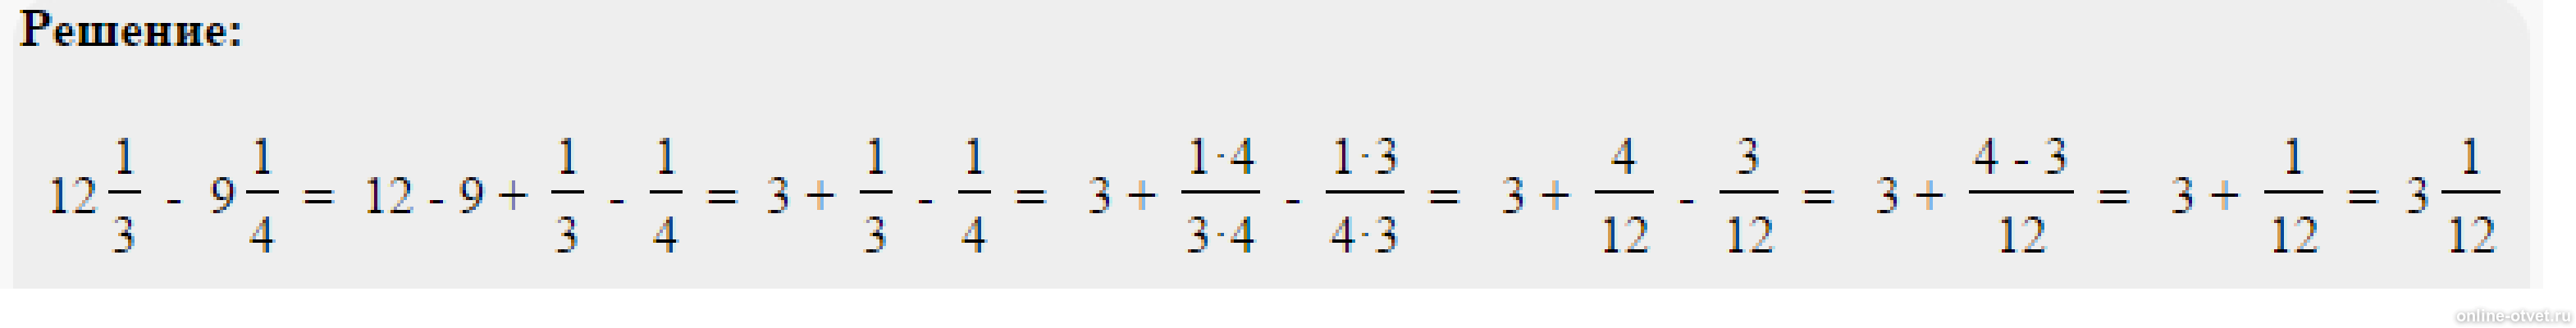 41 5 8 17 1 6. Решить пример одна целая одна пятая. Пример 4 целых3/8*2 целых 3/5*8/9. Решить пример 2 целых минус 1 целая 3/5. Минус 1 целая 3/8 минус 2 целых 5/12.